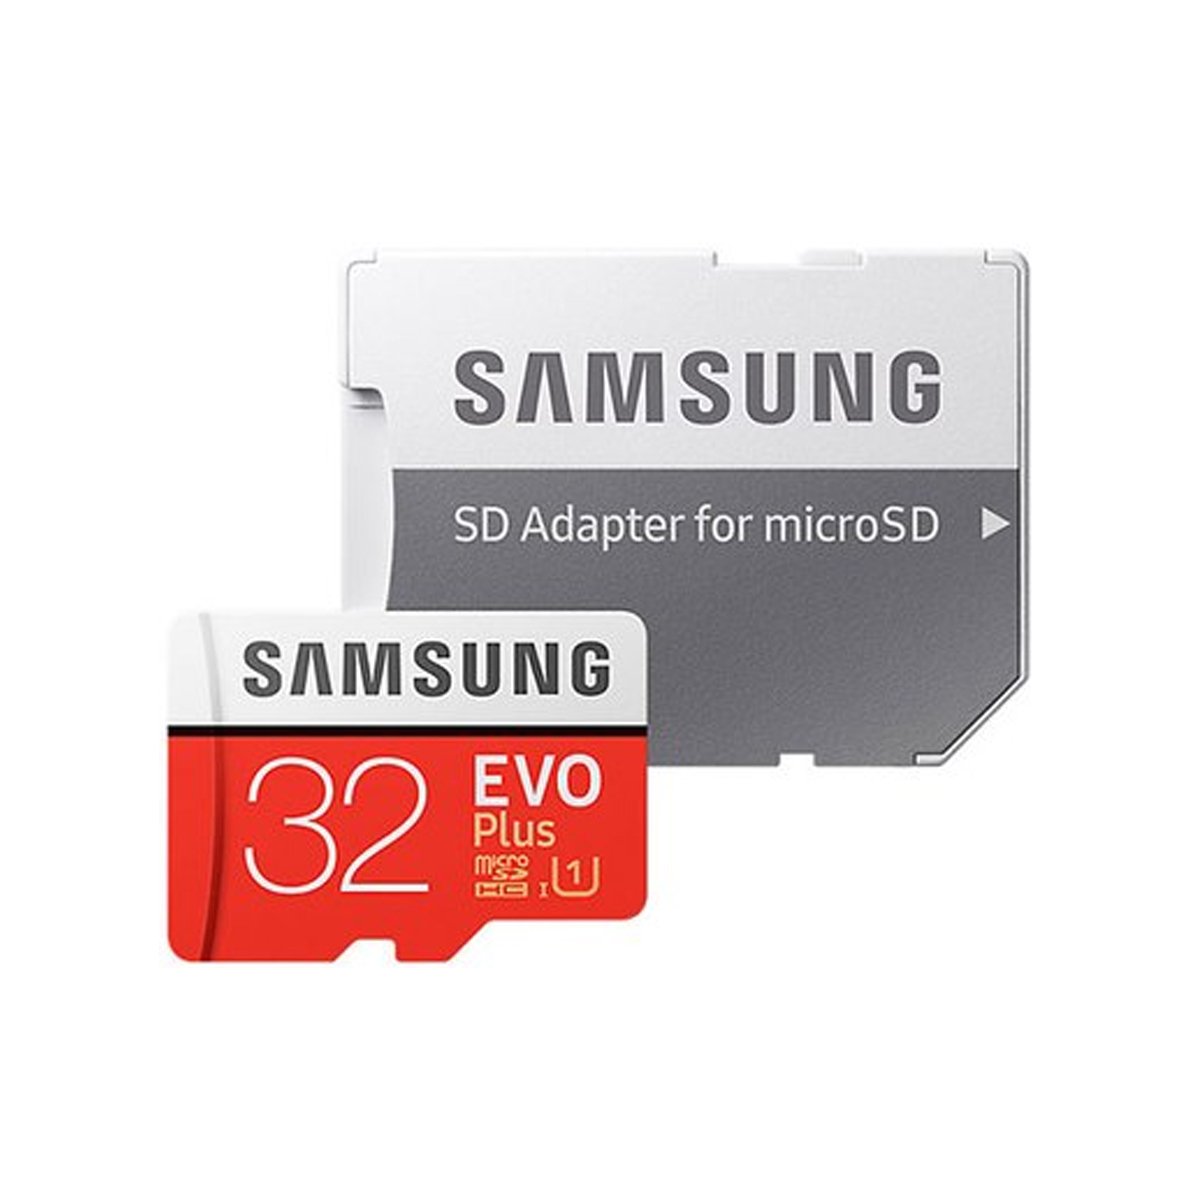 삼성 공식인증 정품 마이크로 Sd카드 Evo Plus 32Gb+Sd아답터/메모리카드/스마트폰/핸드폰/블랙박스, 신세계적 쇼핑포털  Ssg.Com